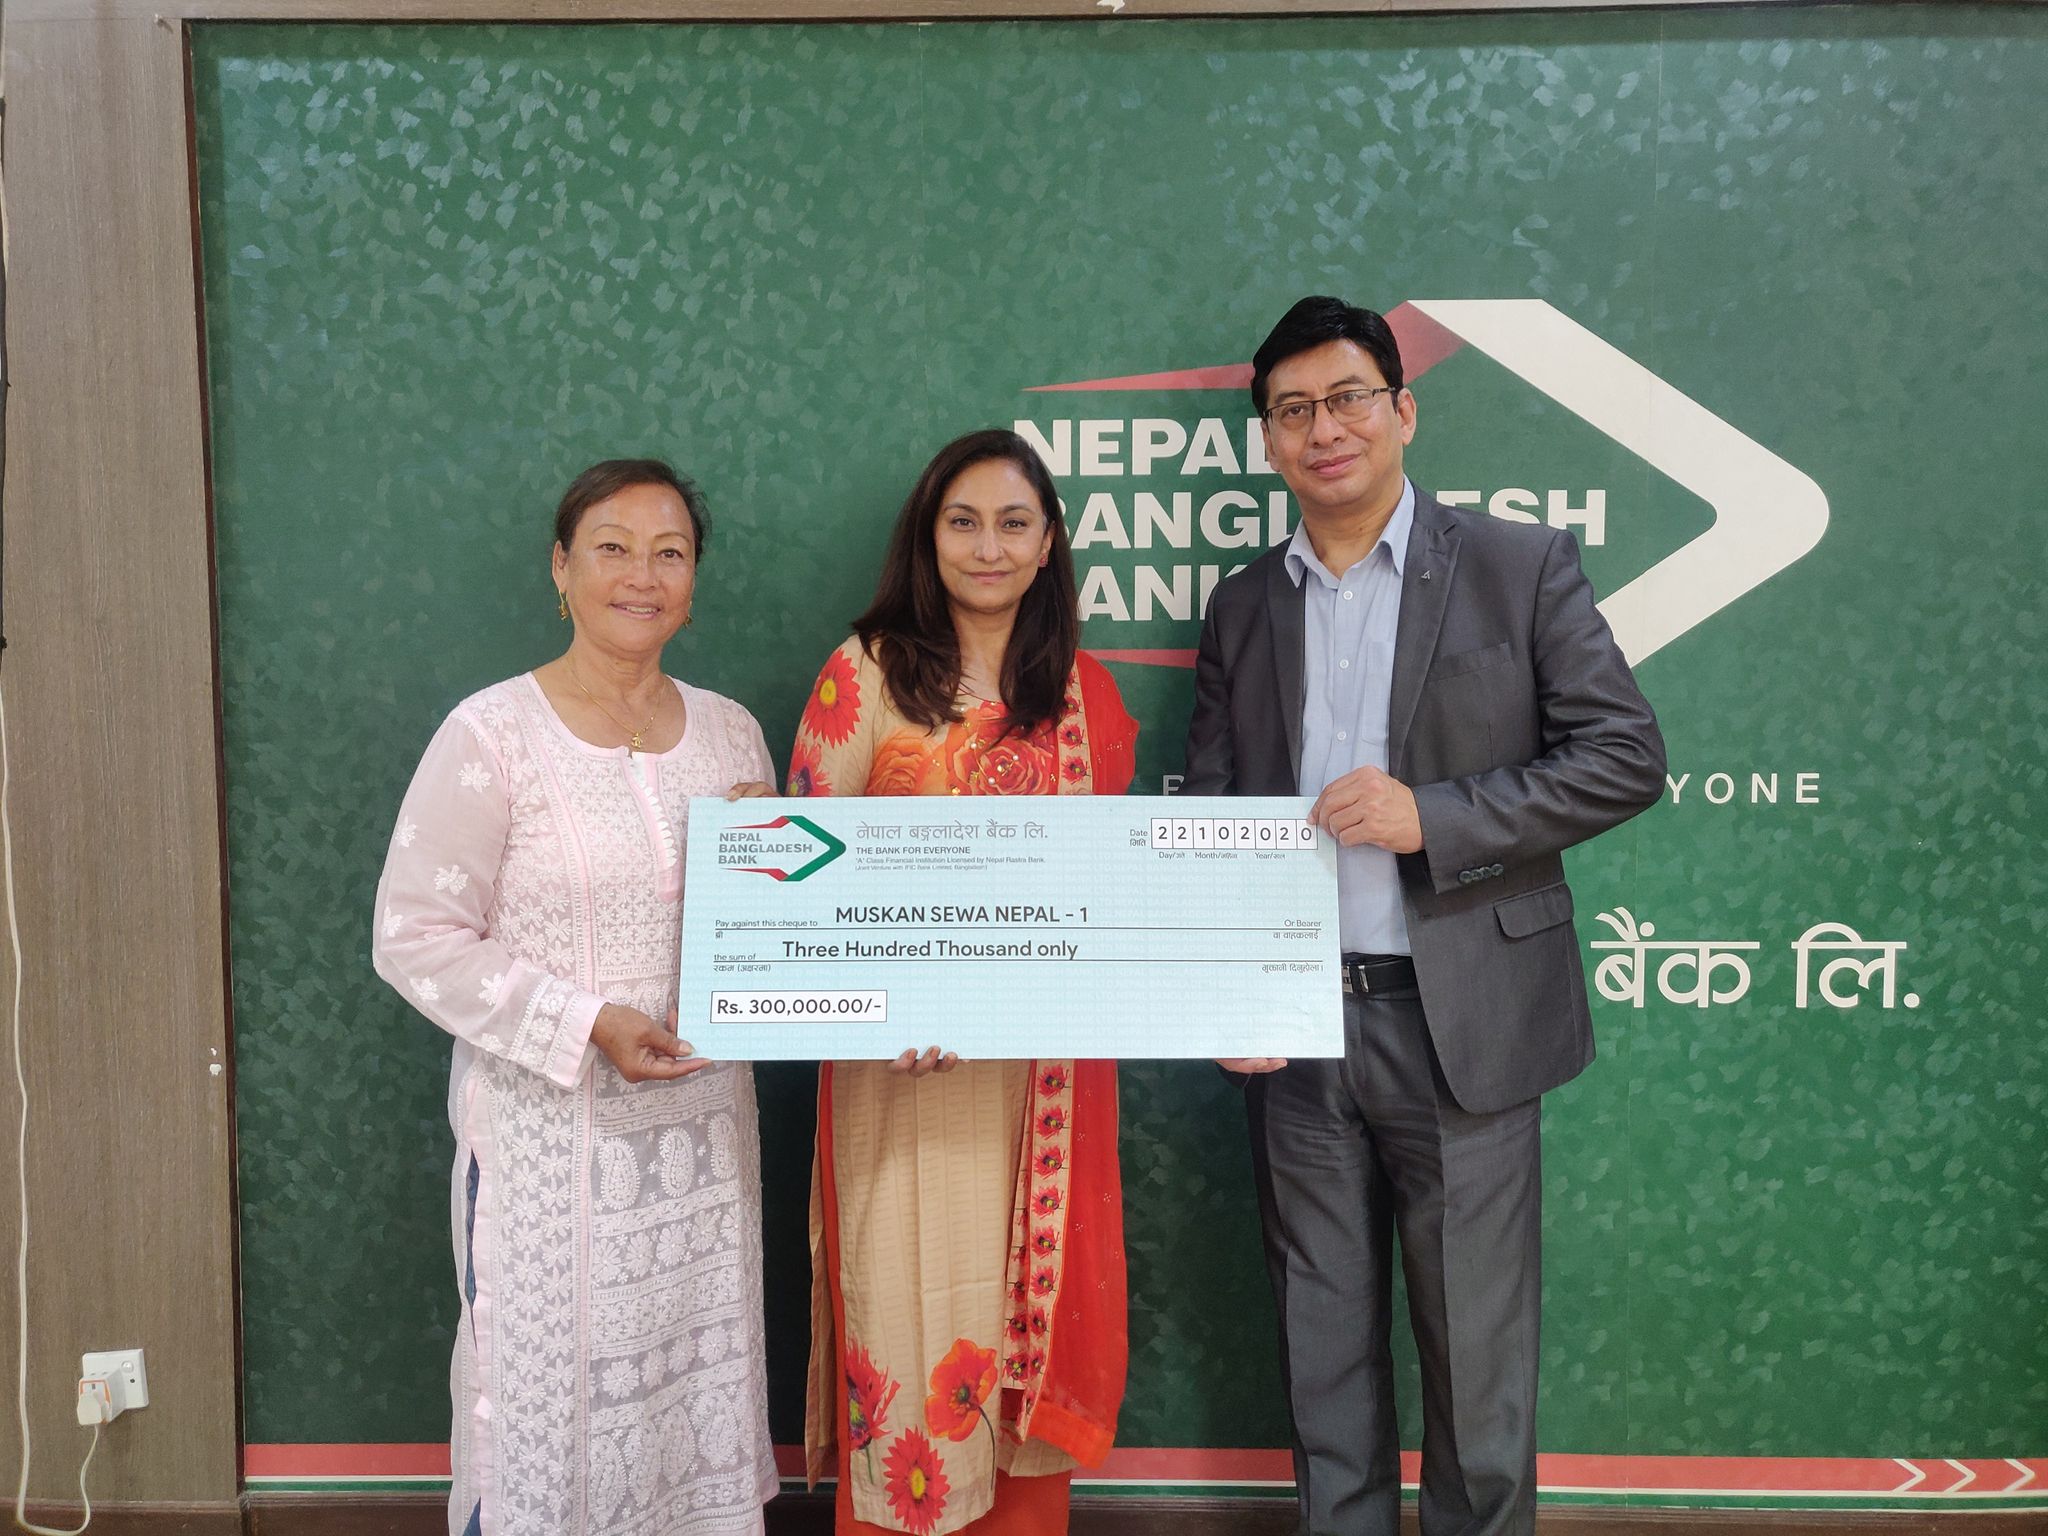 नेपाल बंगलादेश बैंकद्वारा मुस्कान सेवा नेपाललाई रकम हस्तान्तरण 